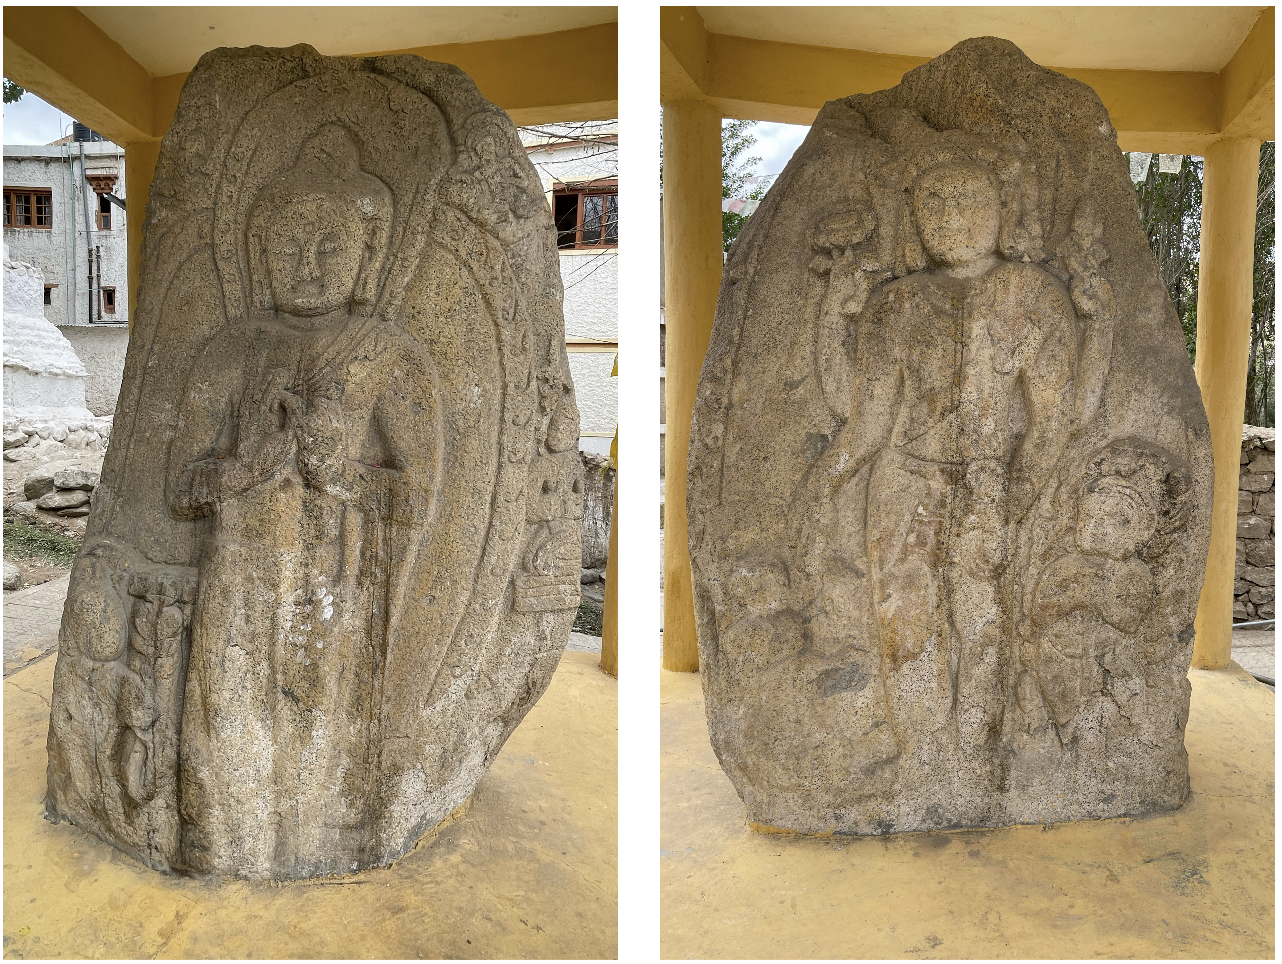 Maitreya Buddha and Avalokiteshvara rock carving